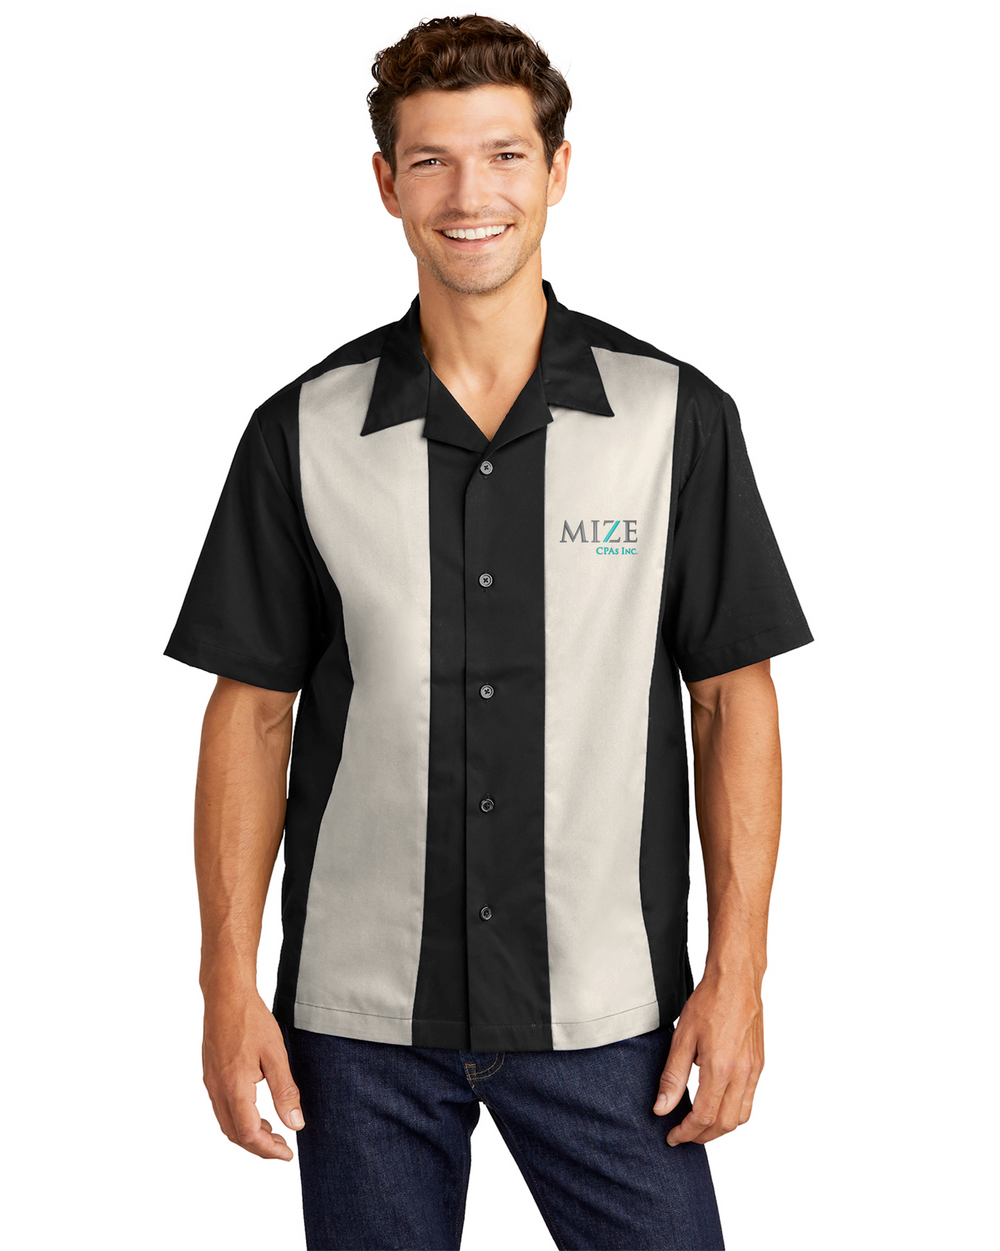 Mize CPAs Inc. - Port Authority Retro Camp Shirt - S300